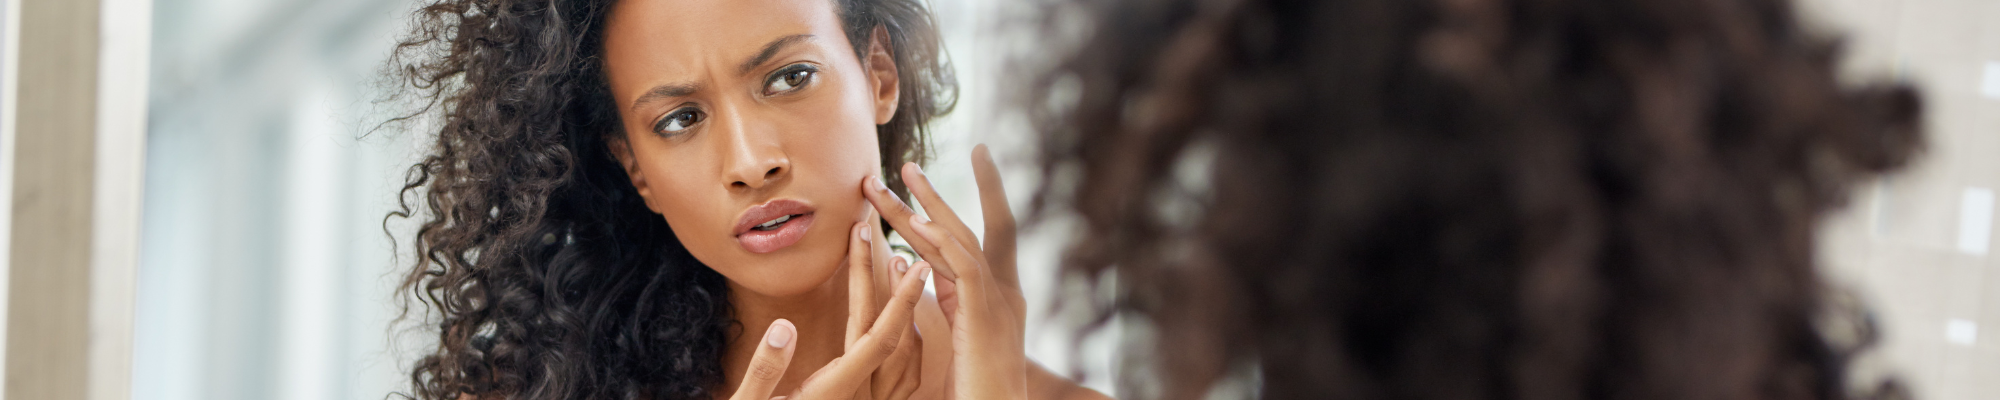 Organic Acne Cream & 13 Pro Skincare Tips for Acne Prone Skin